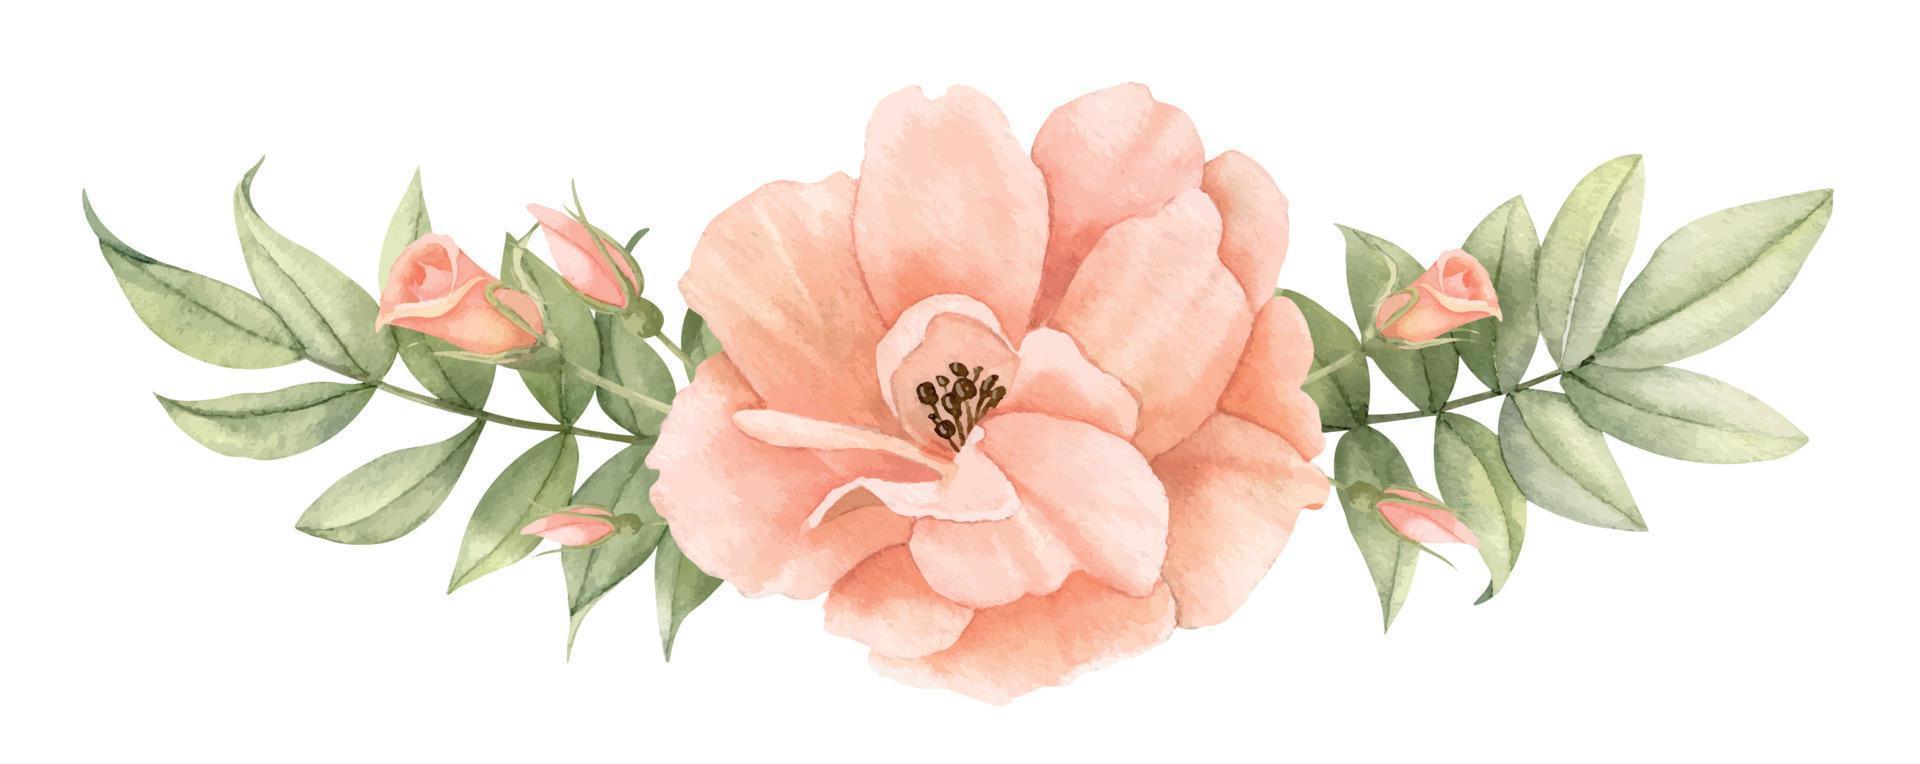 waterverf roze roos bloem met groen bladeren. hand- getrokken illustratie van bloemen boeket in pastel romig kleuren Aan geïsoleerd achtergrond. tekening van delicaat planten voor bruiloft uitnodigingen of kaarten vector